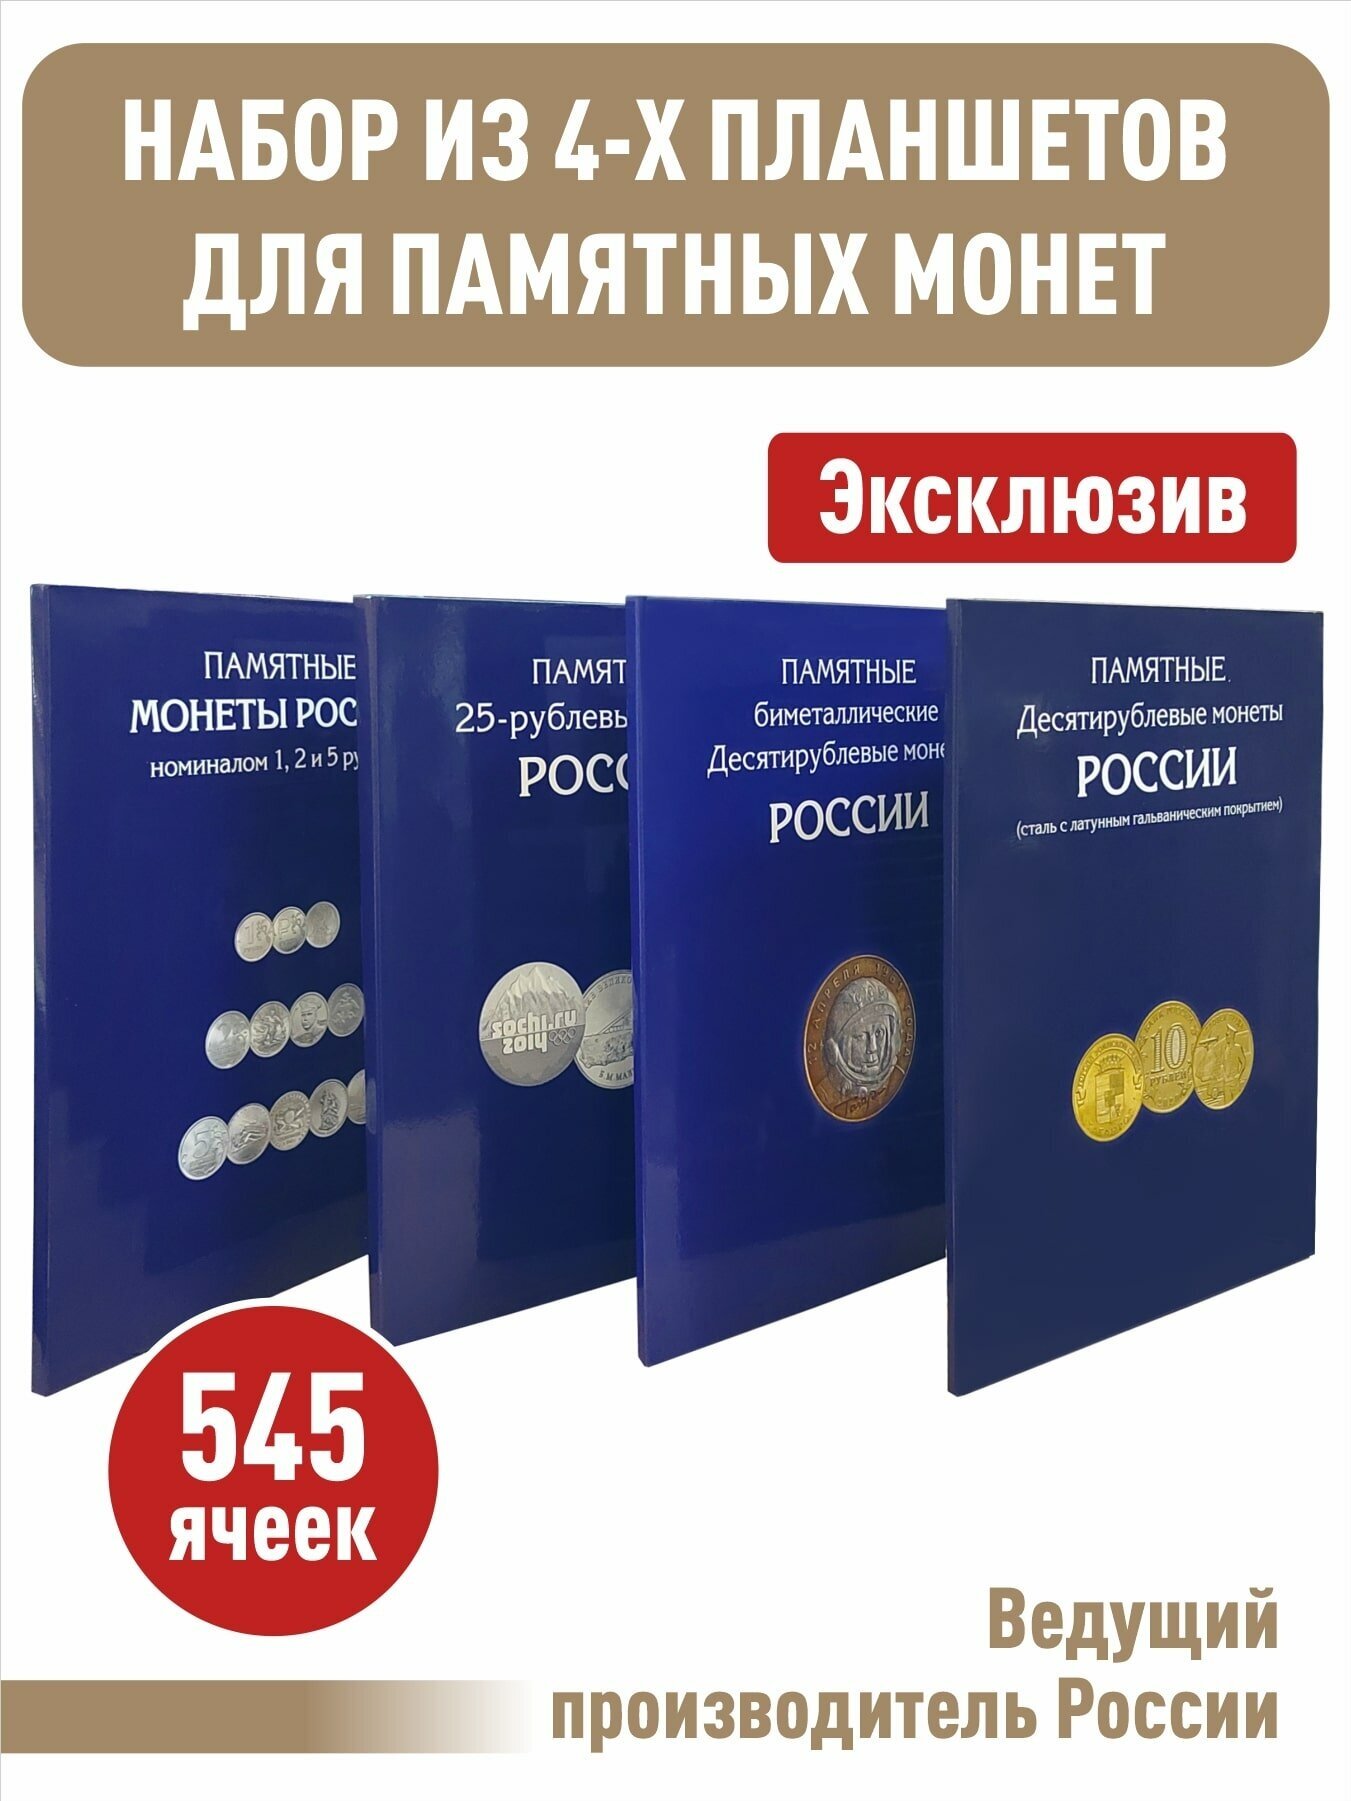 Набор из 4-х альбом-планшетов для памятных 10-руб. стальных, биметаллических (два монетных двора), 25-руб. монет и монет номиналом 1,2,5 рублей.